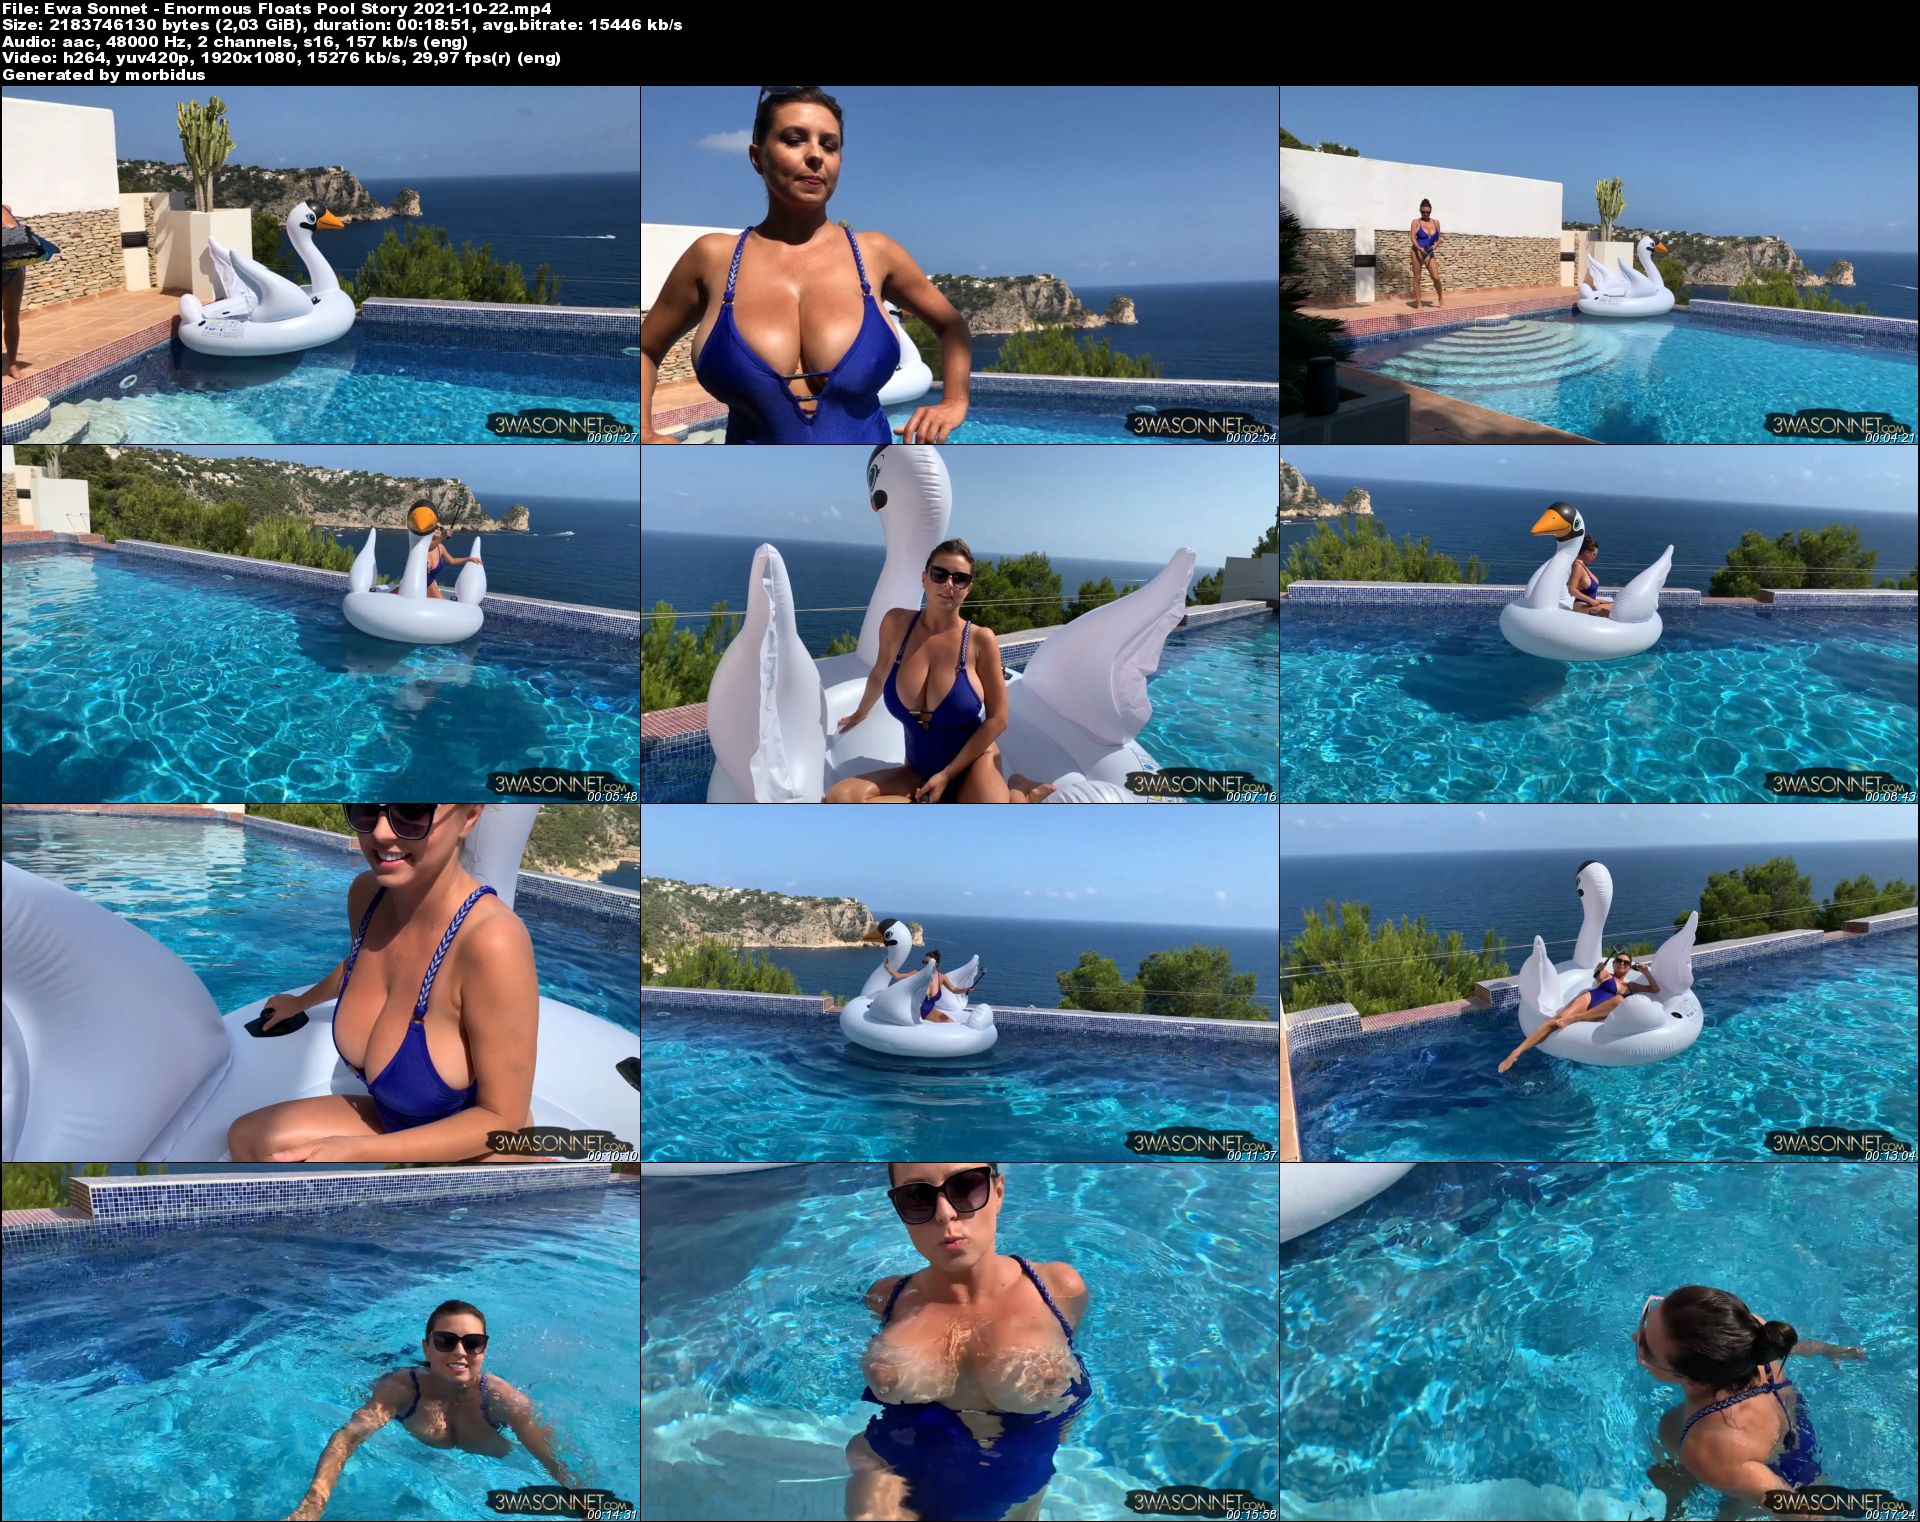 Ewa Sonnet - Enormous Floats Pool Story 2021-10-22.jpeg